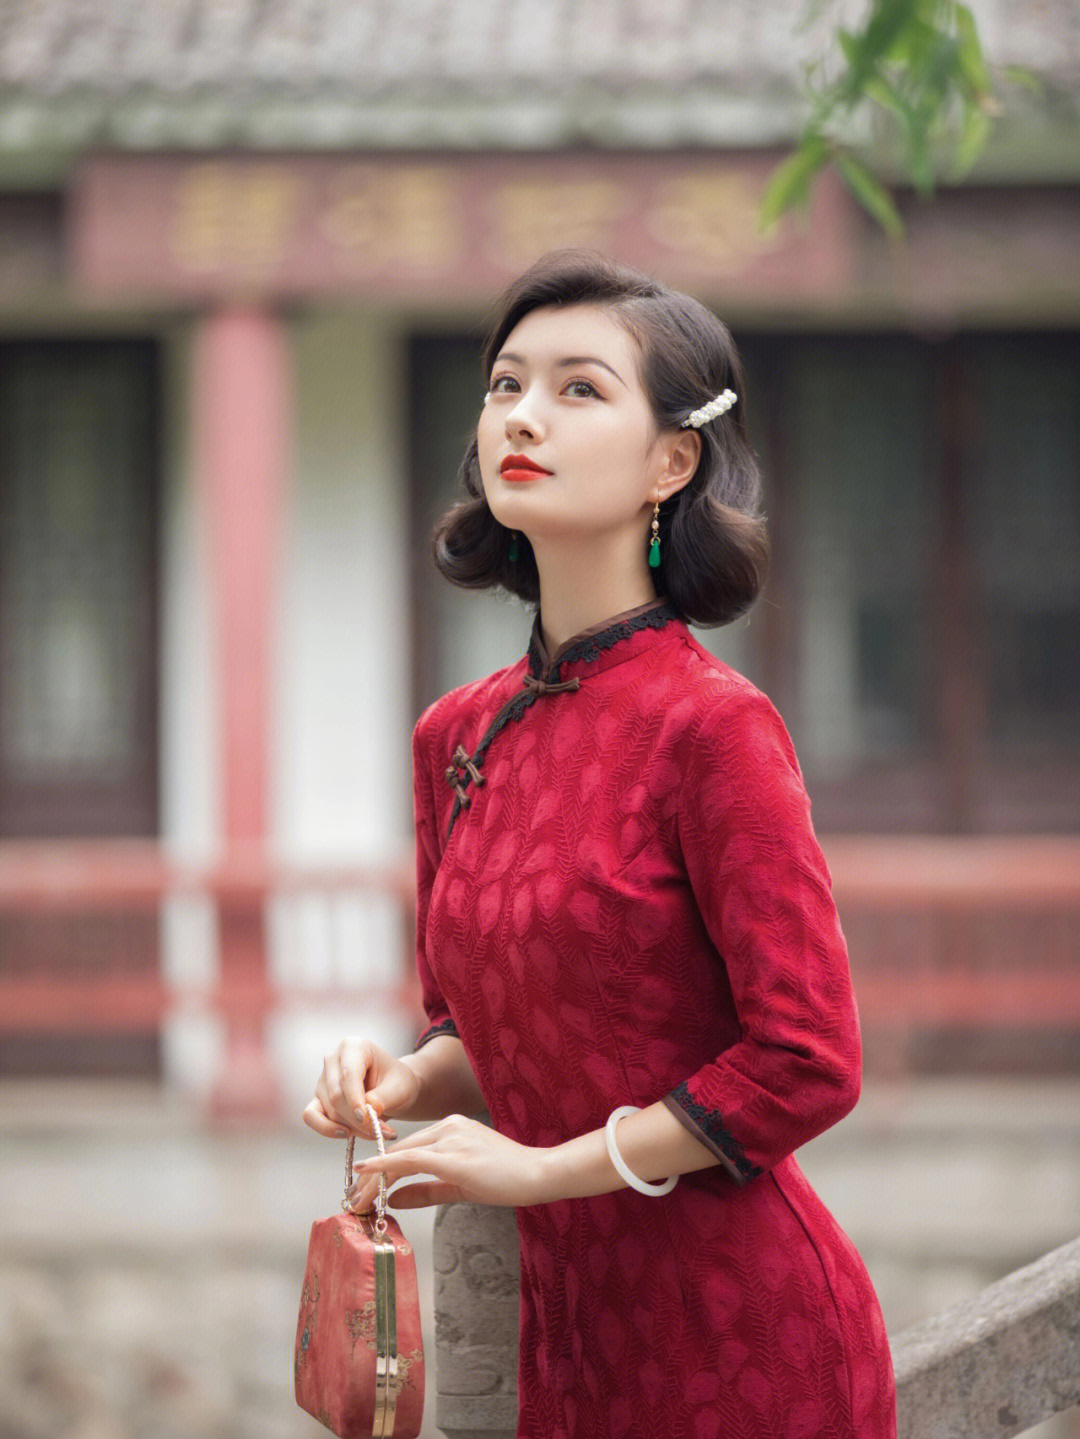 一身红色贴身旗袍,珍珠发夹做简单装饰齐肩卷发优雅又可爱像极了民国